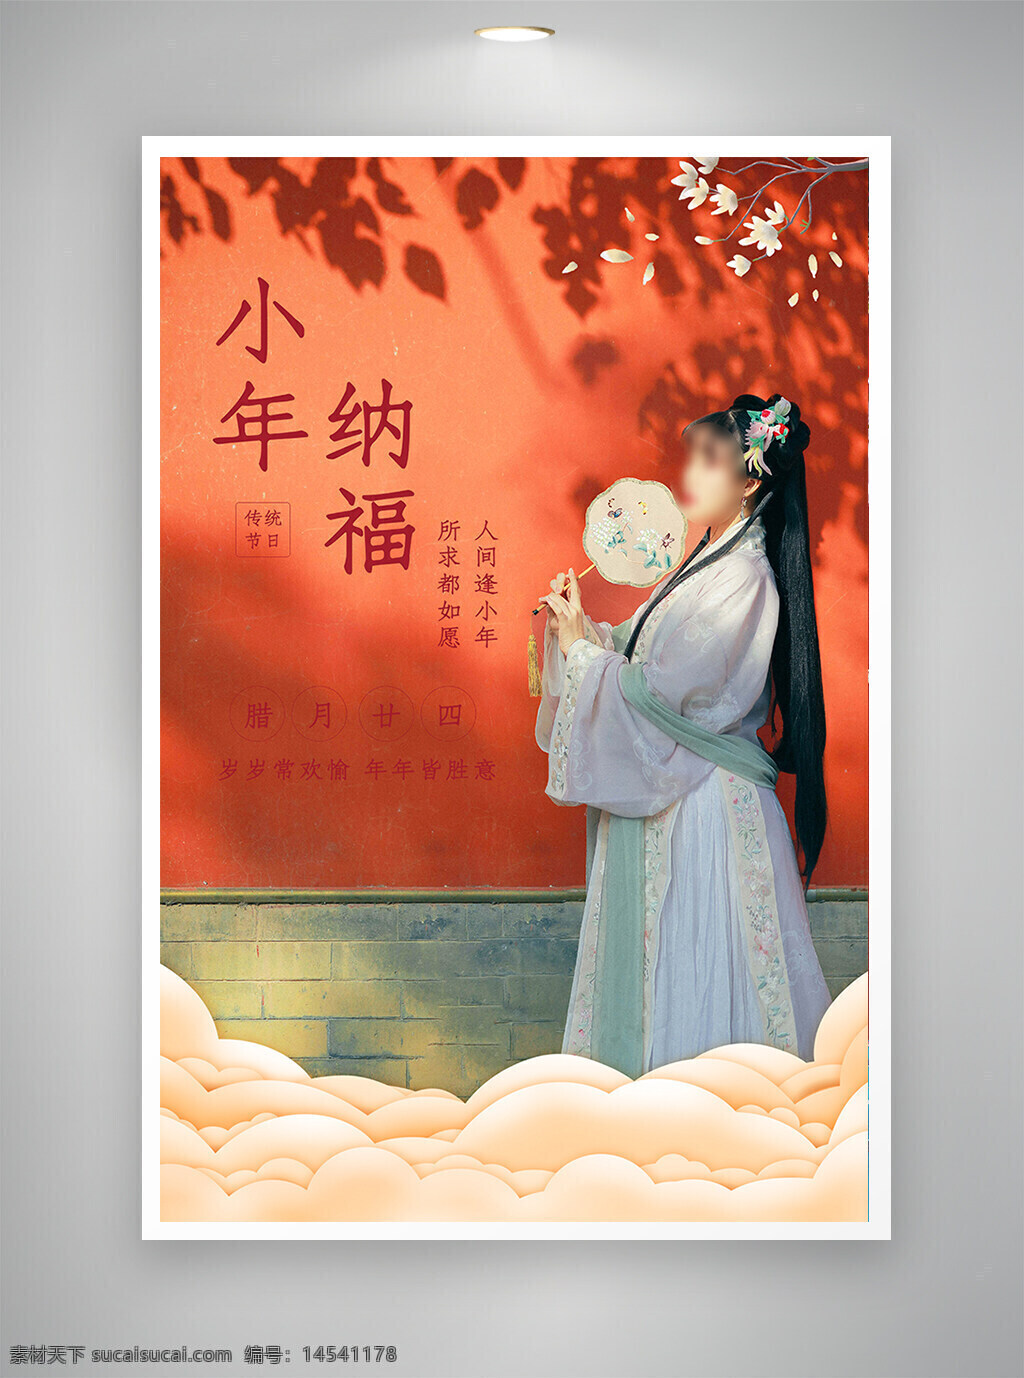 中国风海报 促销海报 节日海报 古风海报 小年纳福